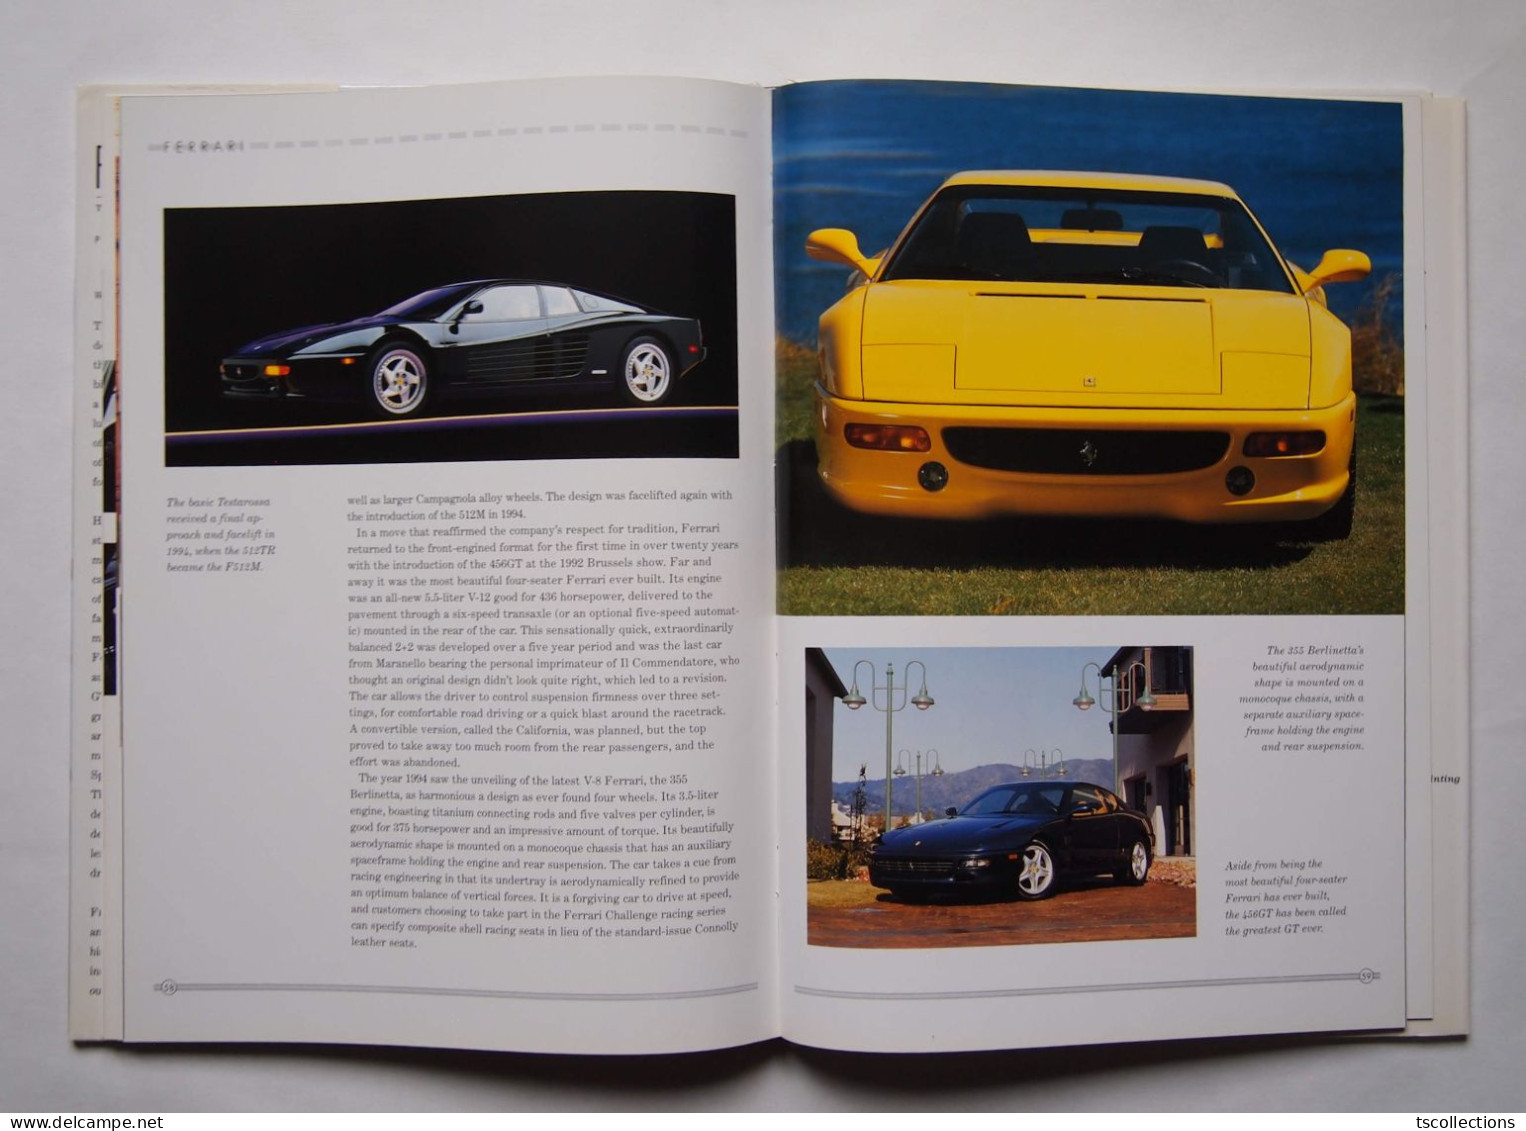 Ferrari The Ultimate Dream Machine - Books On Collecting